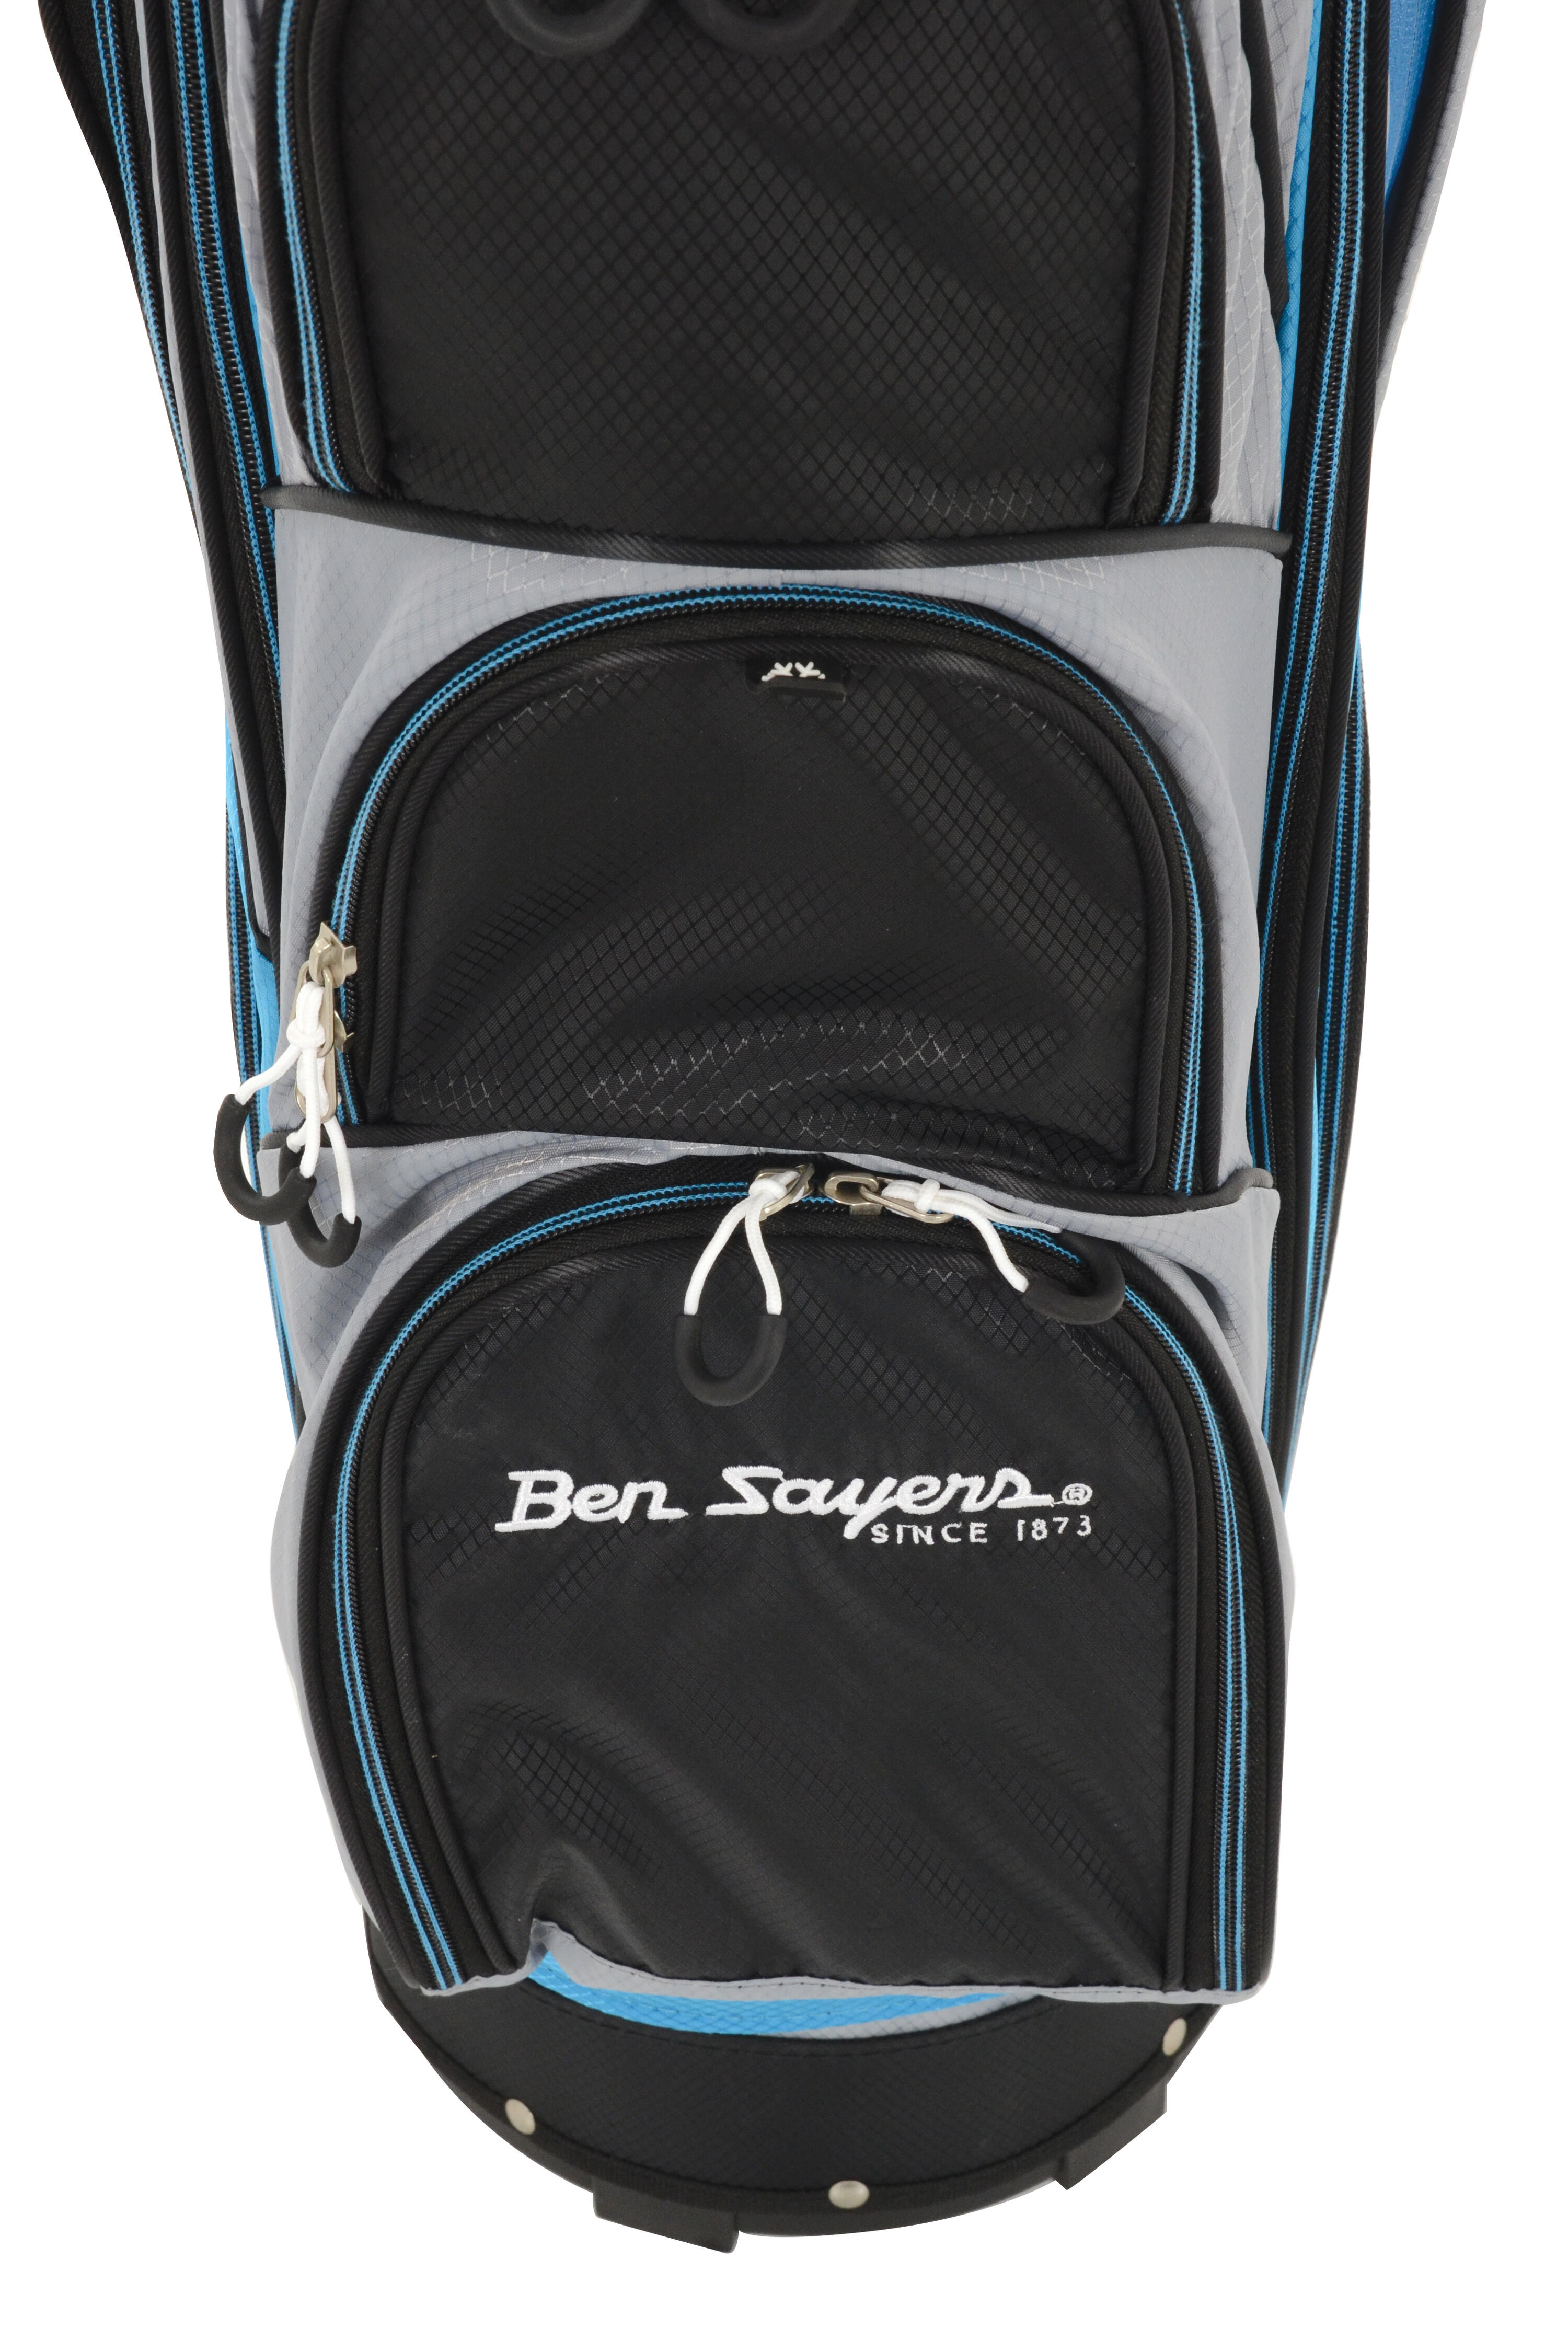 Ben Sayers DLX Cart Bag 6/7